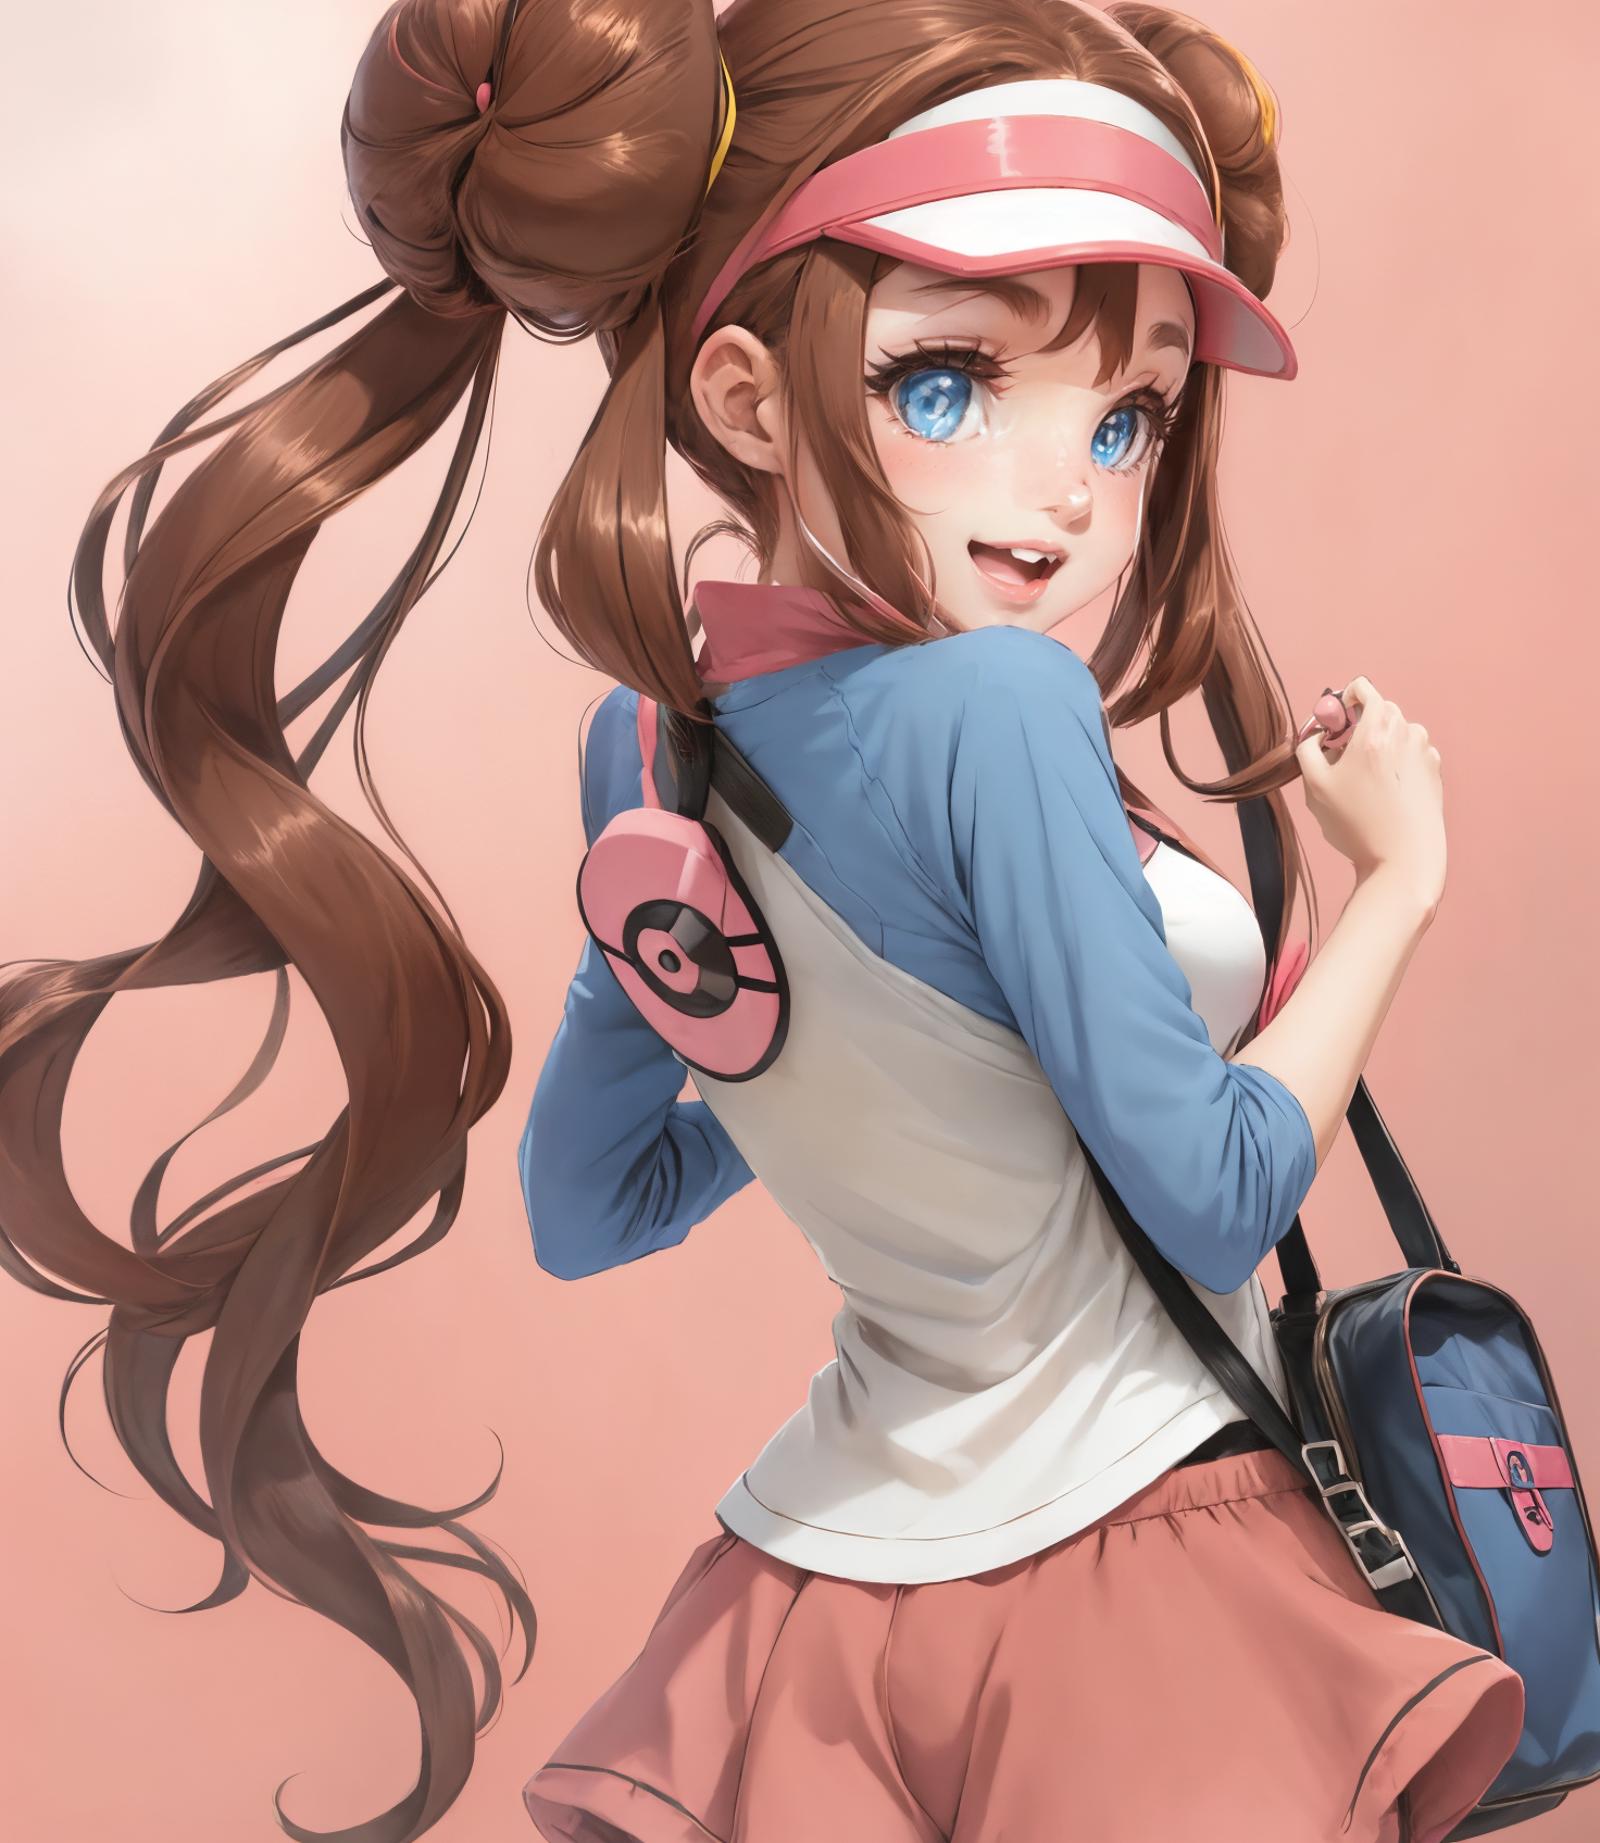 メイ - Rosa Pokemon image by lechuckai500